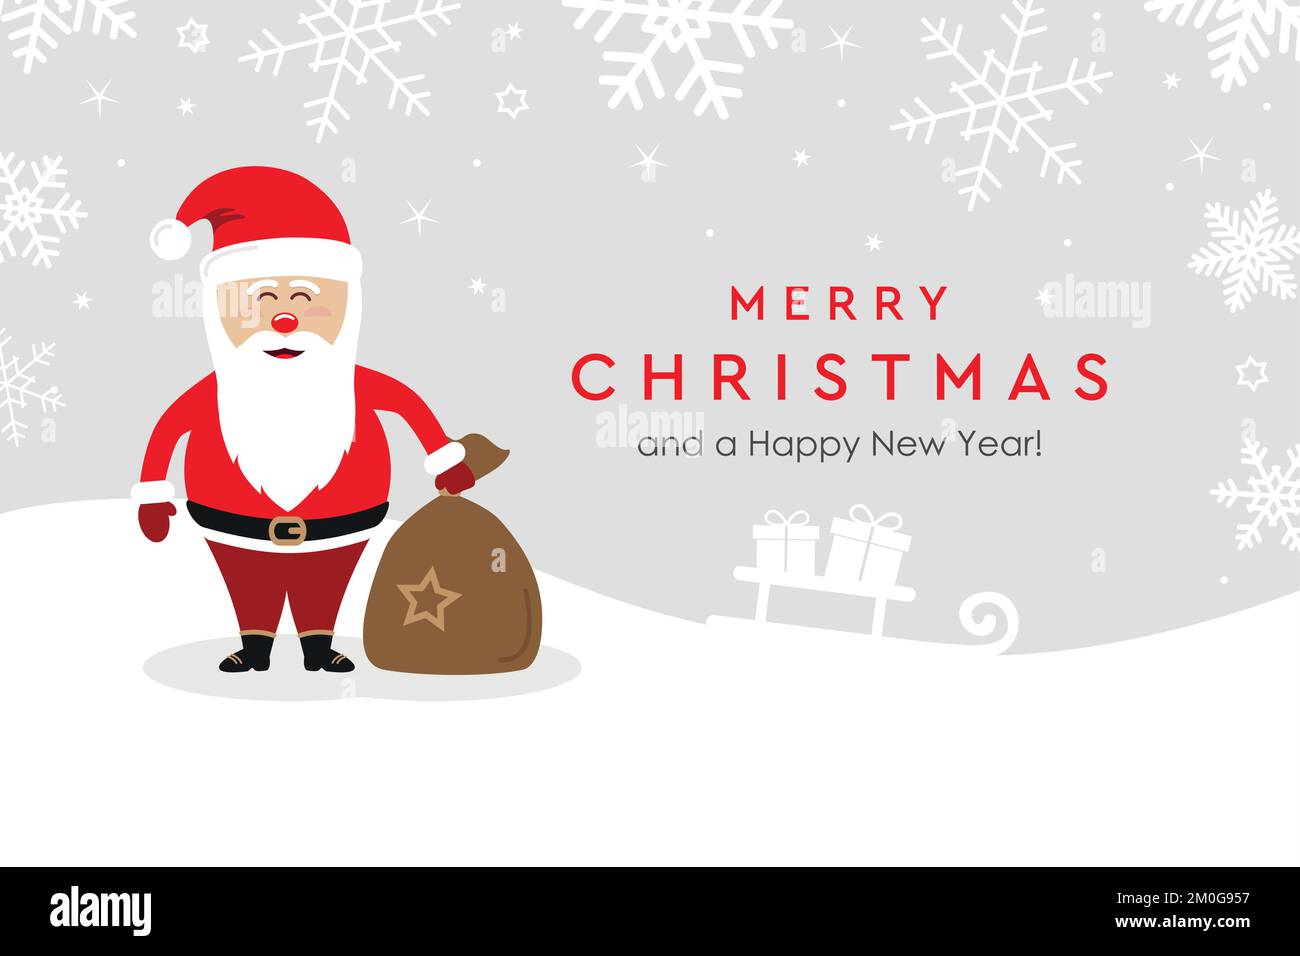 weihnachtsgrußkarte mit niedlichem weihnachtsmann auf verschneitem Hintergrund Stock Vektor